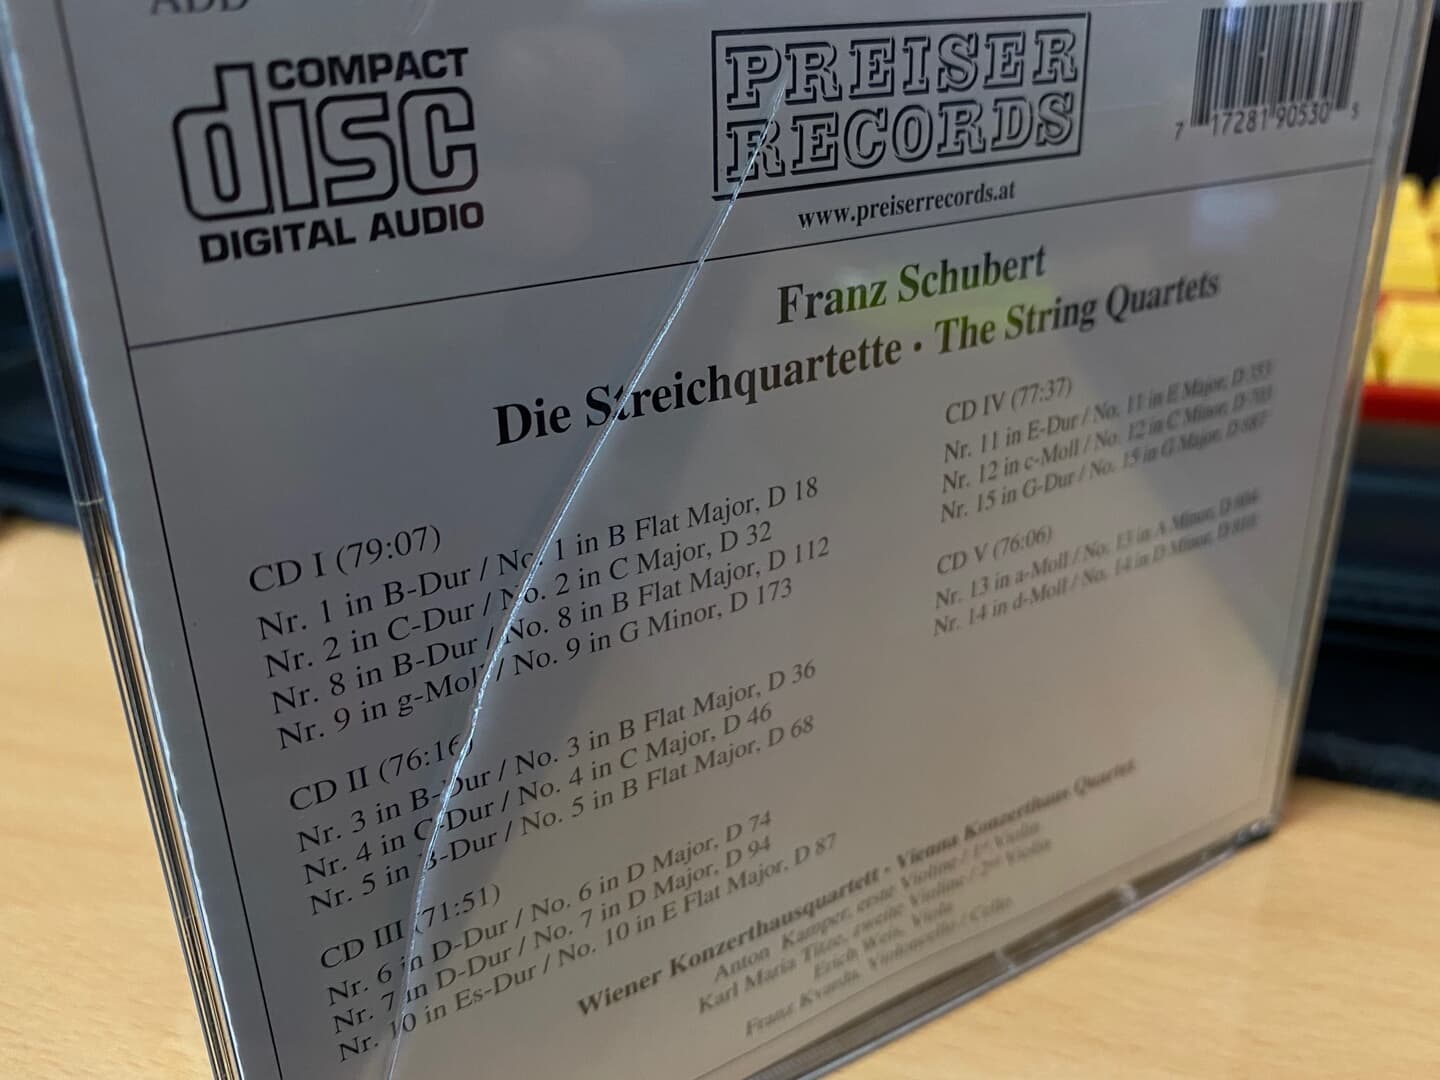 빈 콘쩨르트하우스 콰르텟 - Wiener Konzerthausquartett - Schubert Streichquartette 5Cds [오스트리아발매]